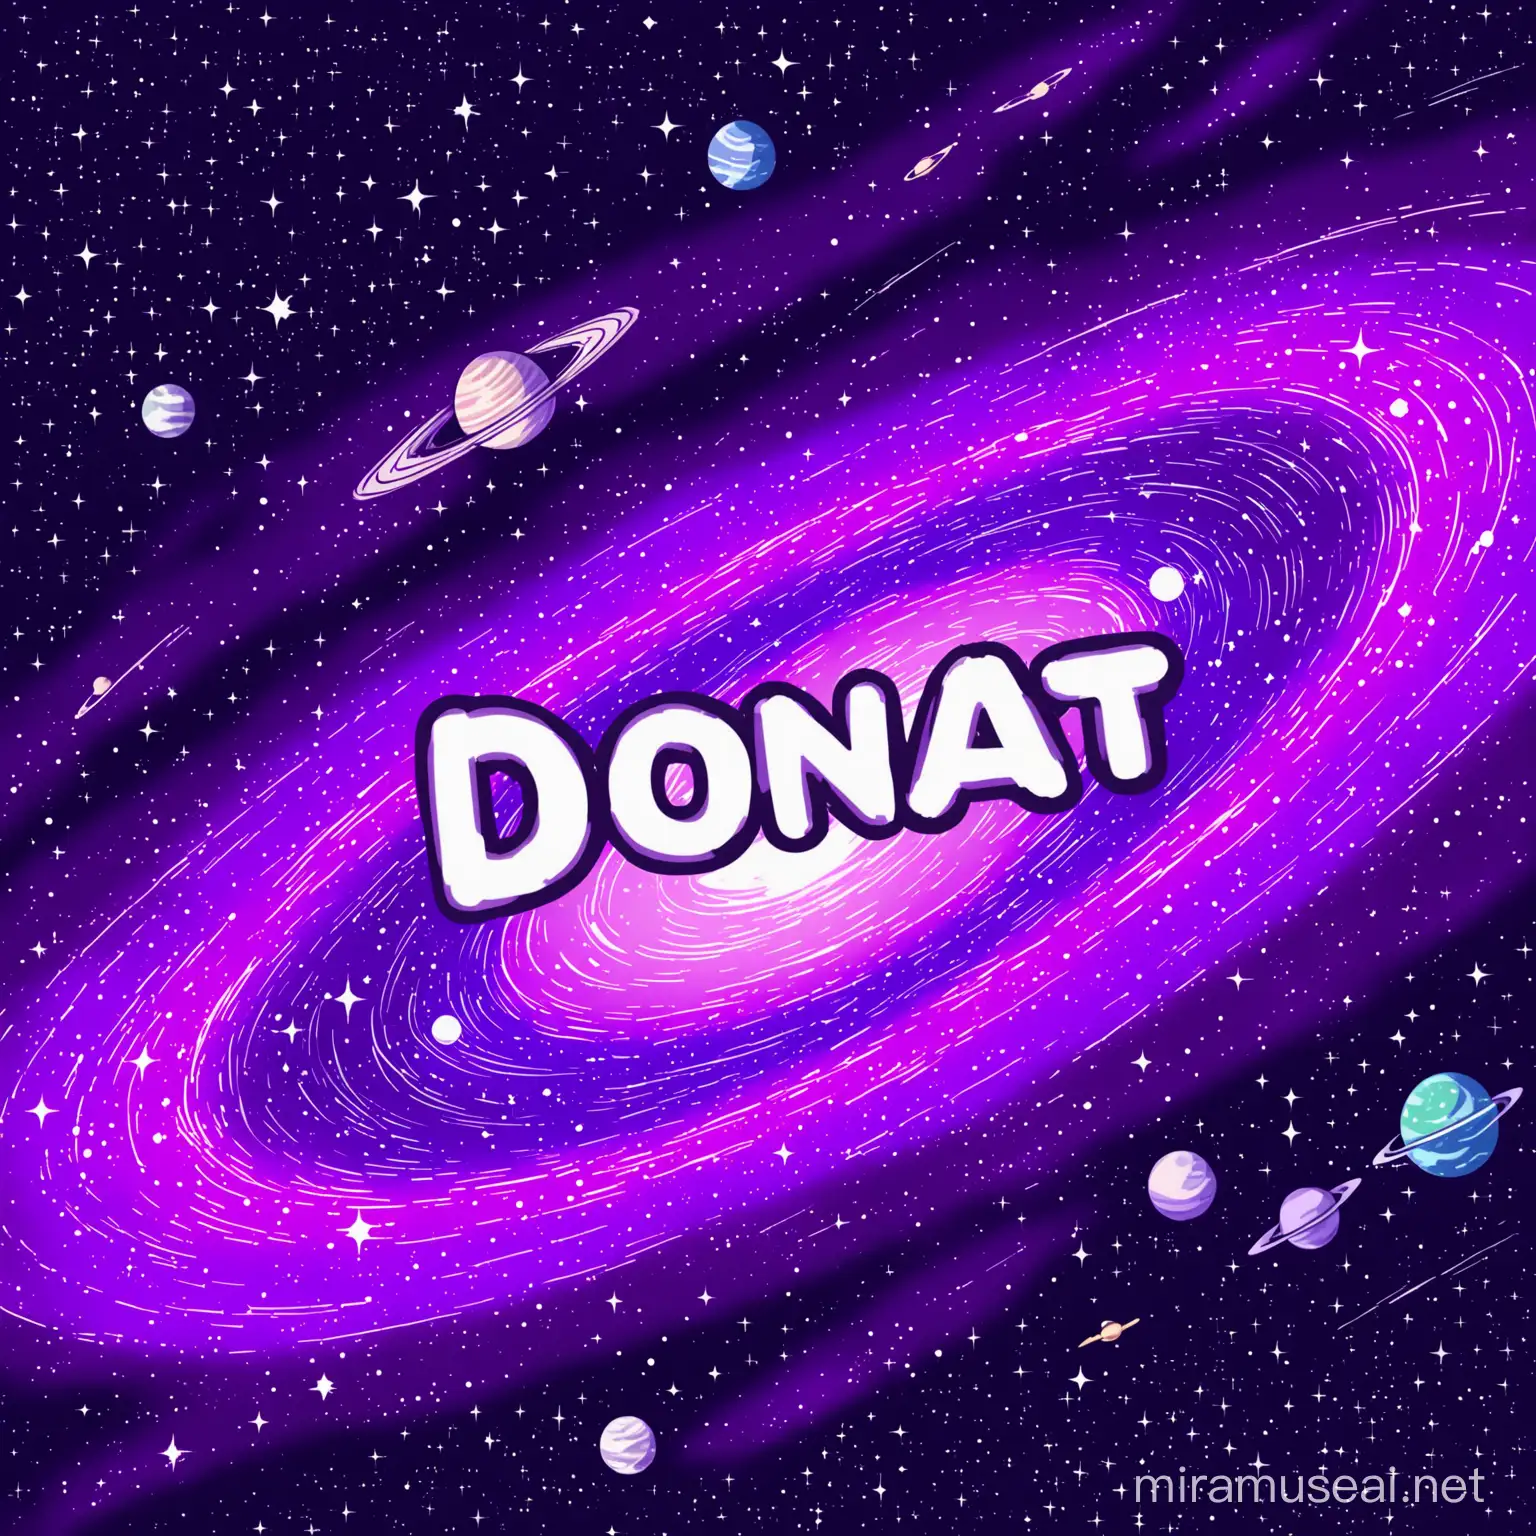 Нарисуй картинку космоса со словом “DONAT”и чтобы слово было читаемо  , в лиловых цветах 